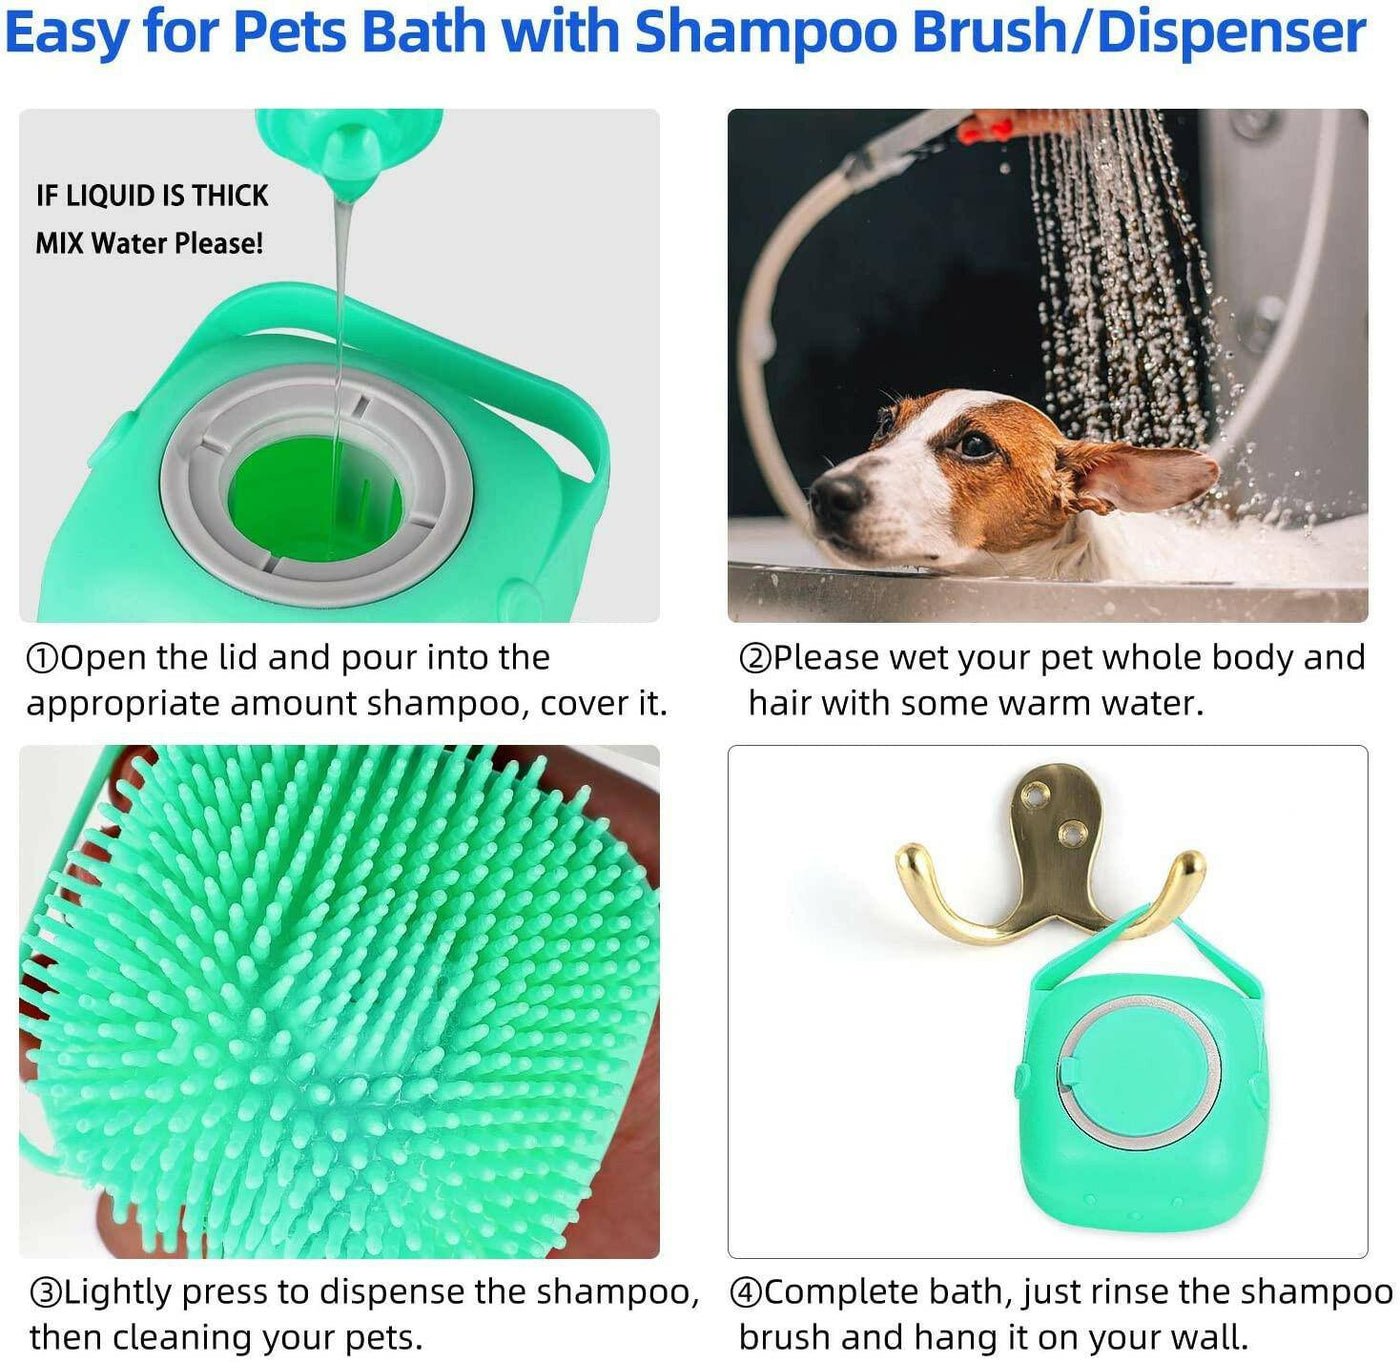 Silicone Pet Shampoo Massager Brush®